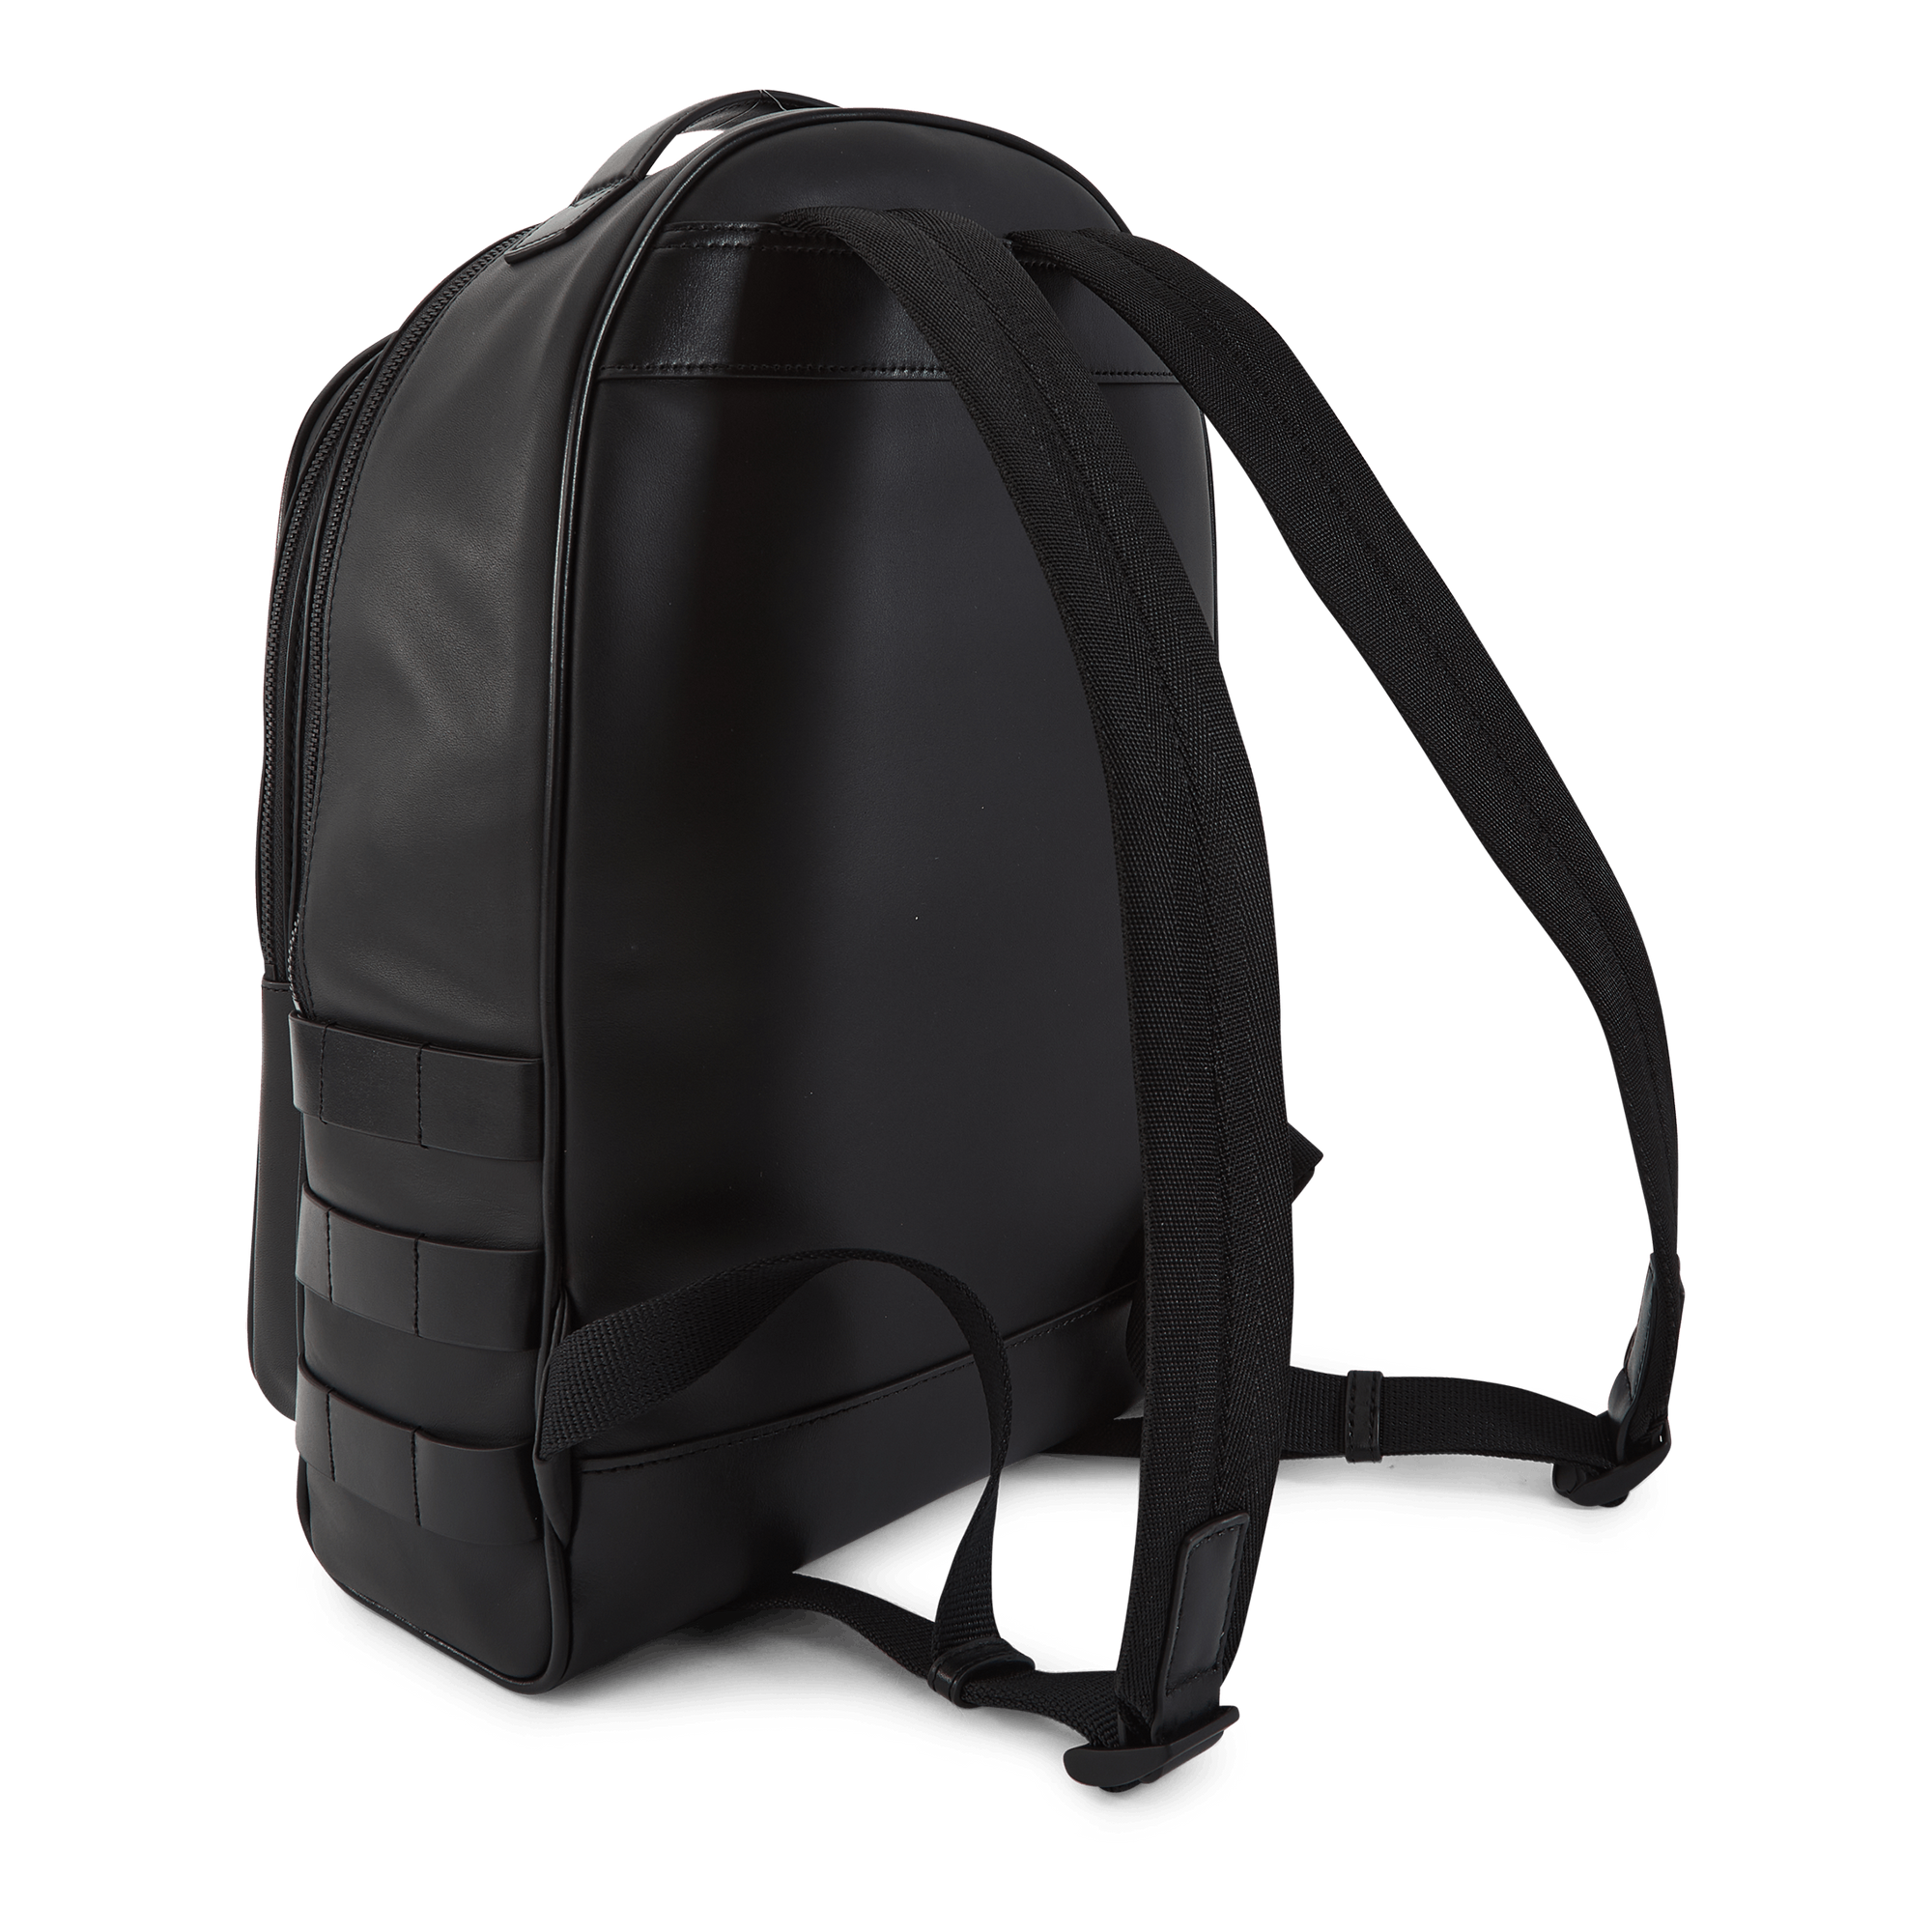 Backpack Black